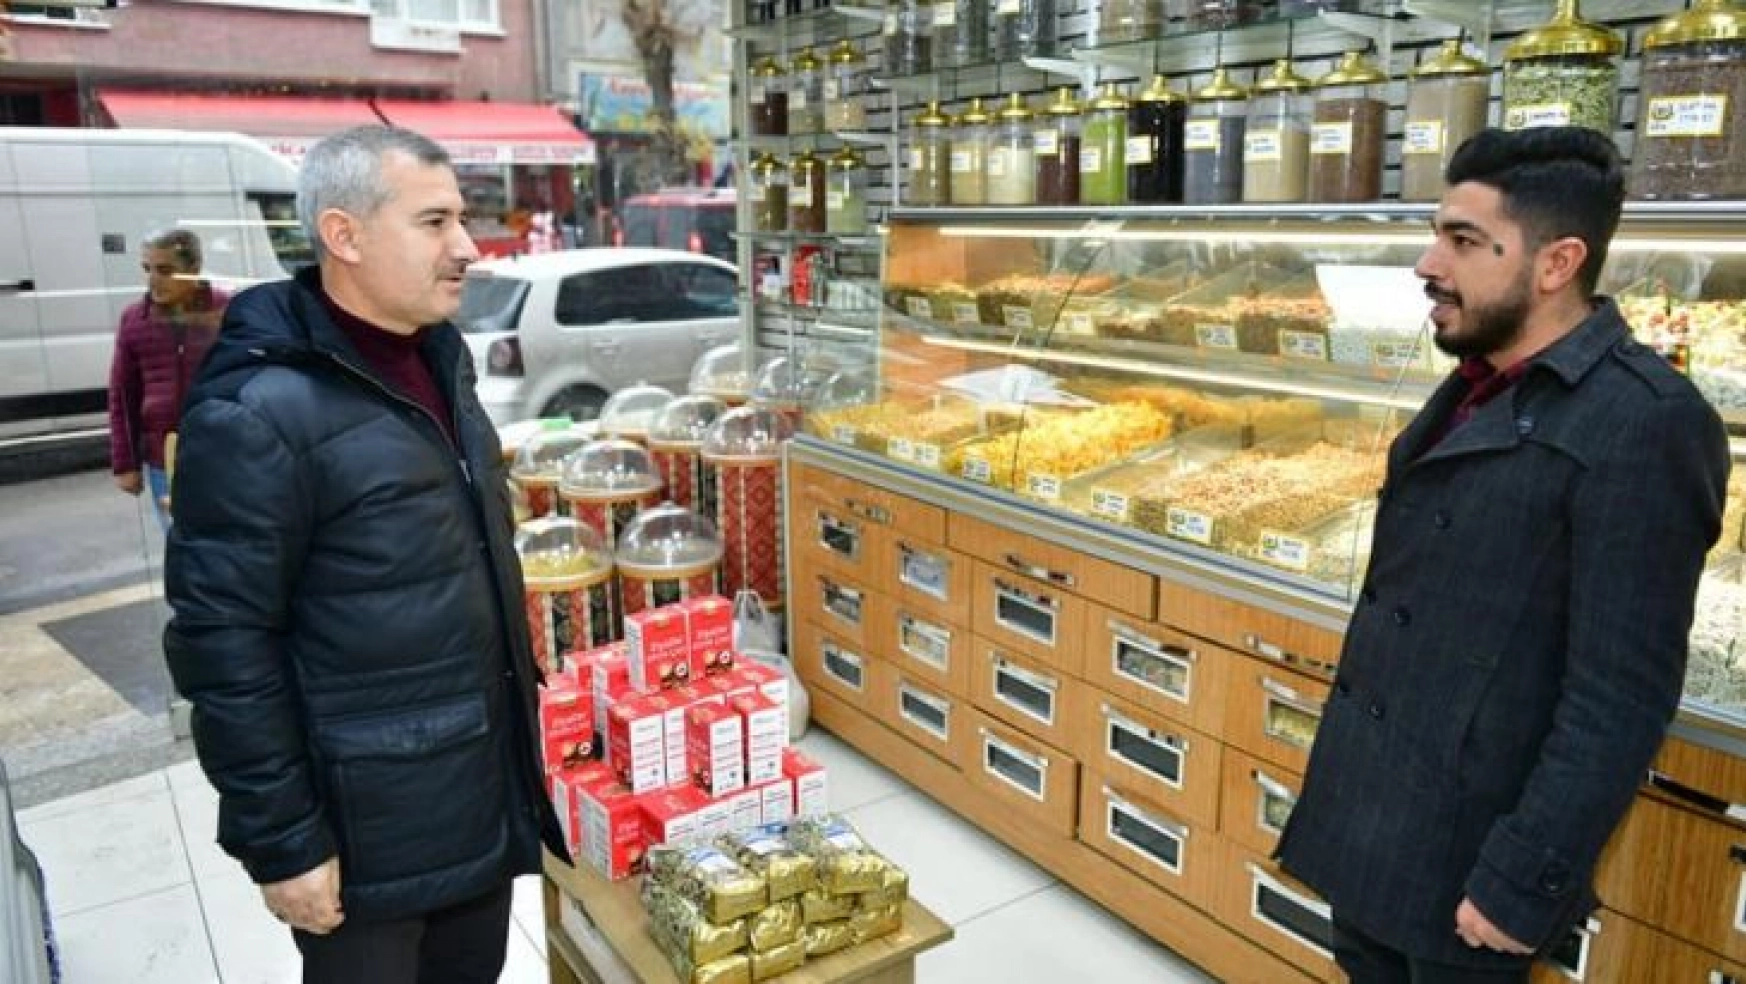 Başkan Çınar,  esnafları ziyaret edip taleplerini dinledi